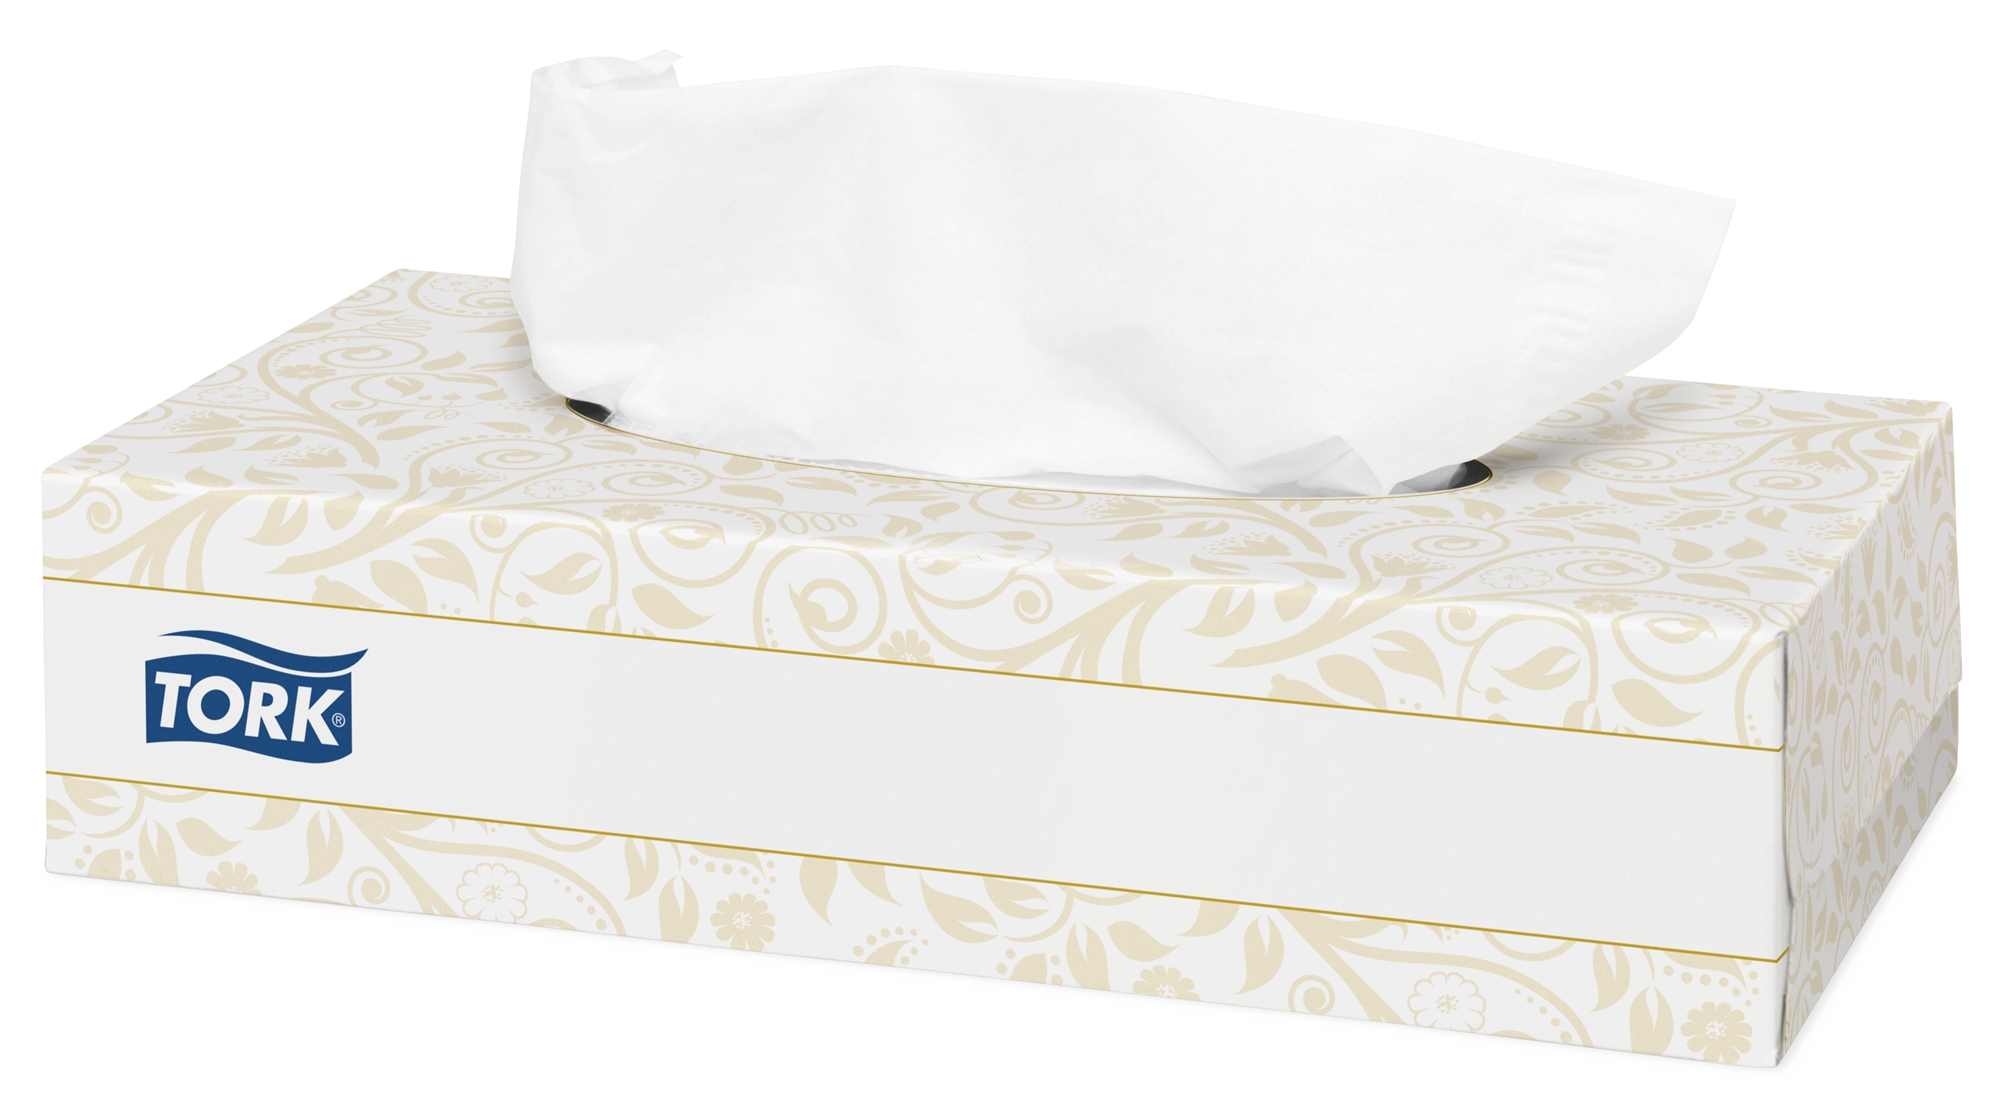 Lotus Mouchoirs en papier Classic, quadruple épaisseur - étui de 9 mouchoirs  - Blanc - Mouchoirsfavorable à acheter dans notre magasin